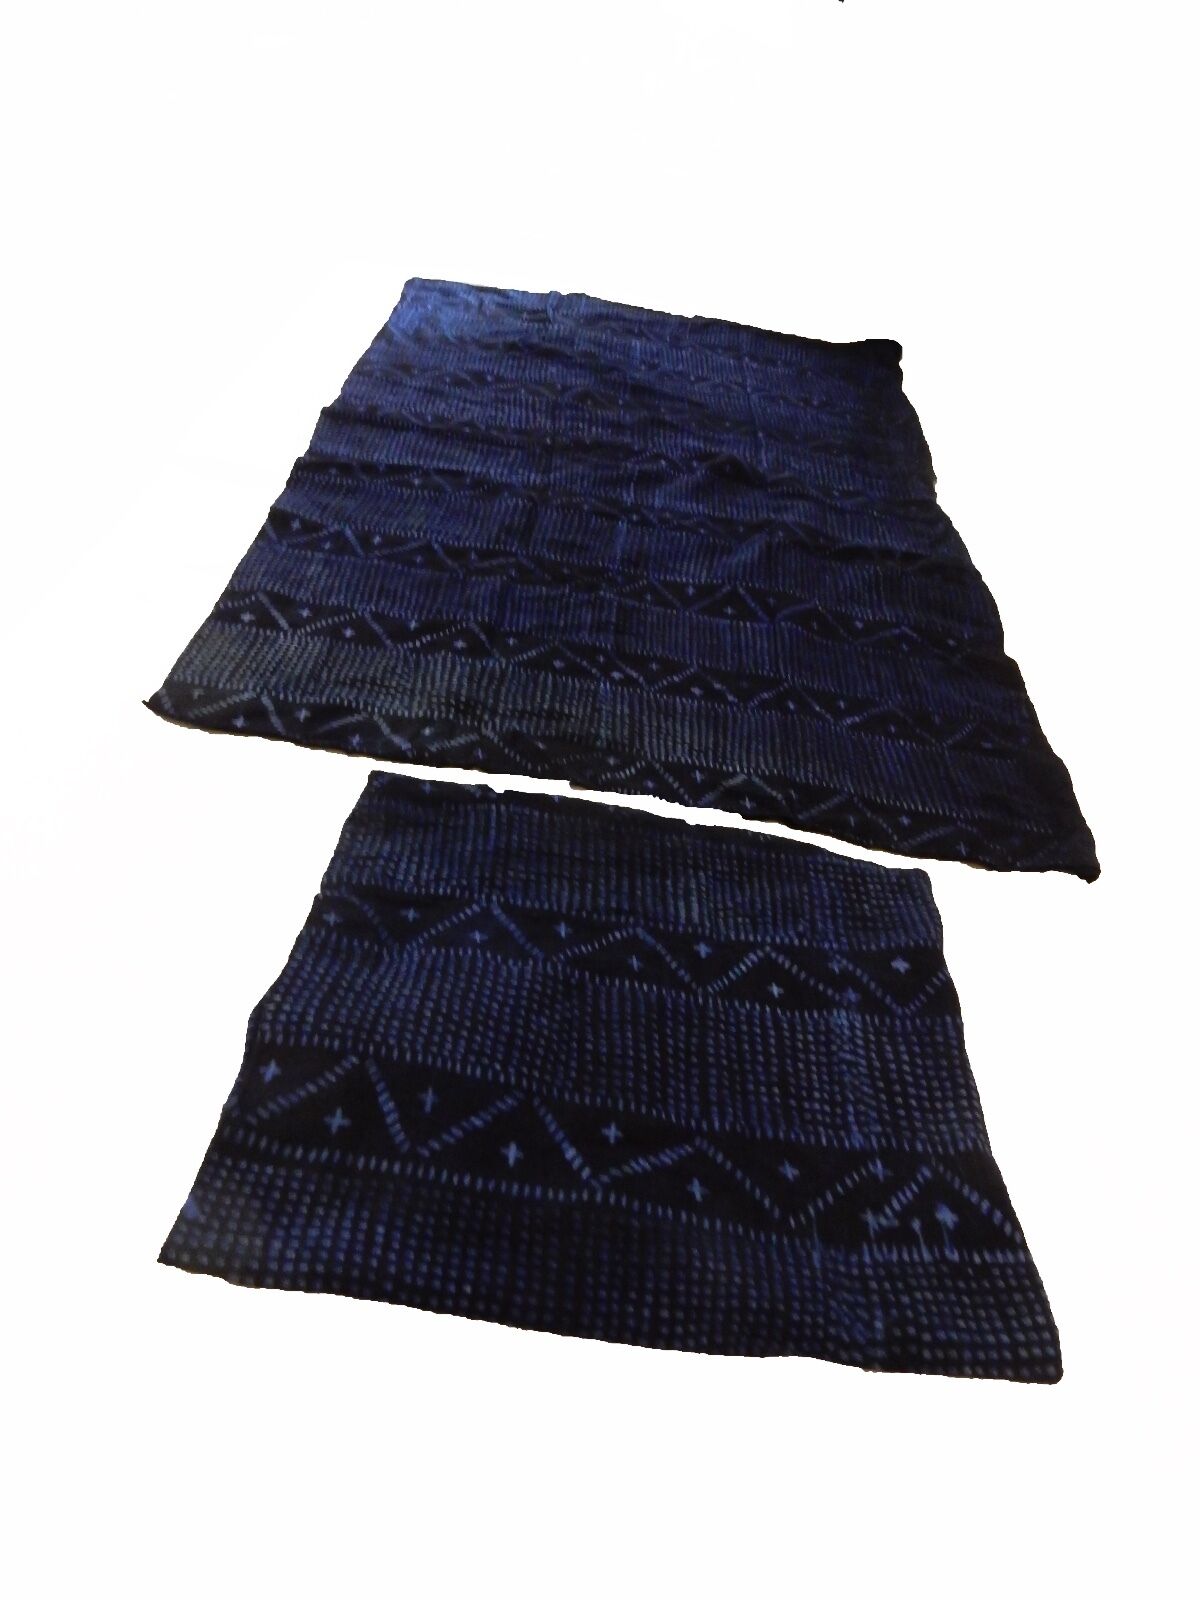 Malian Indigo Mud Cloth Textiles S/2 46" by 56" # 11